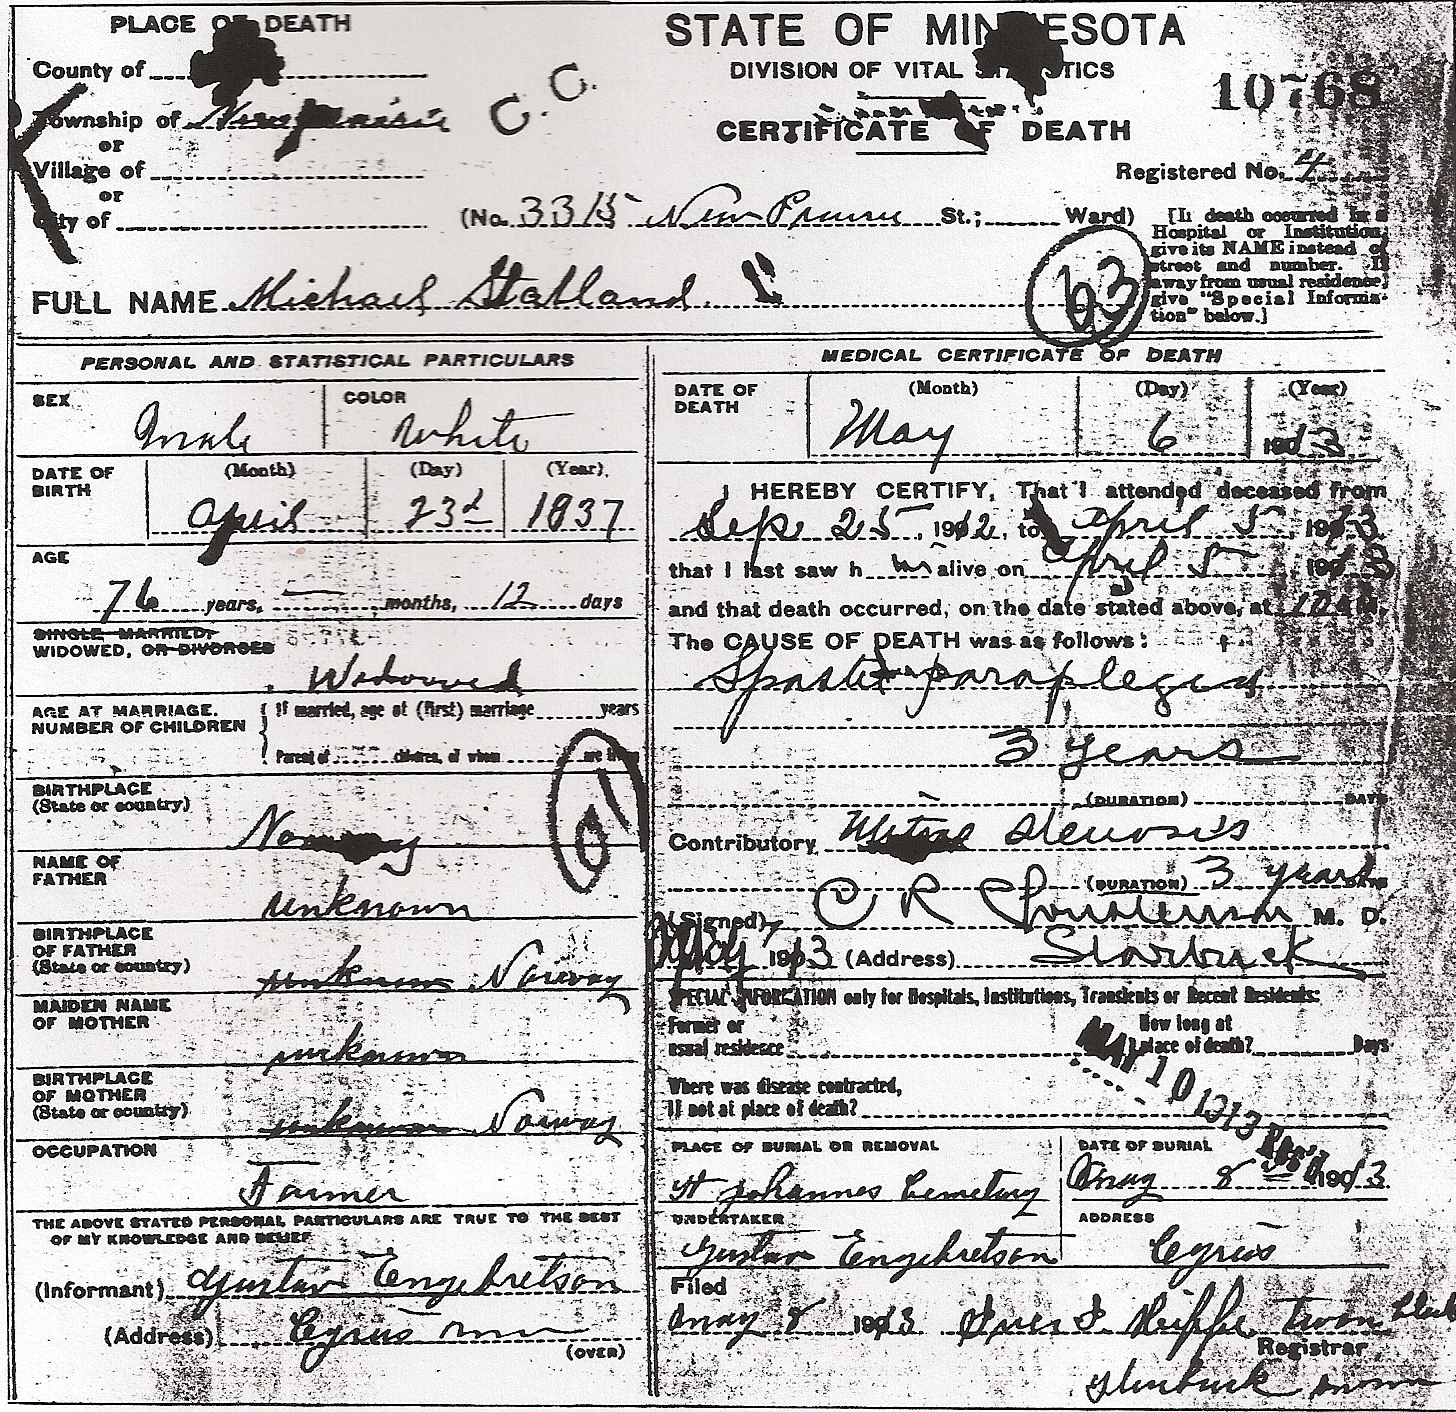 Micheals death certificate